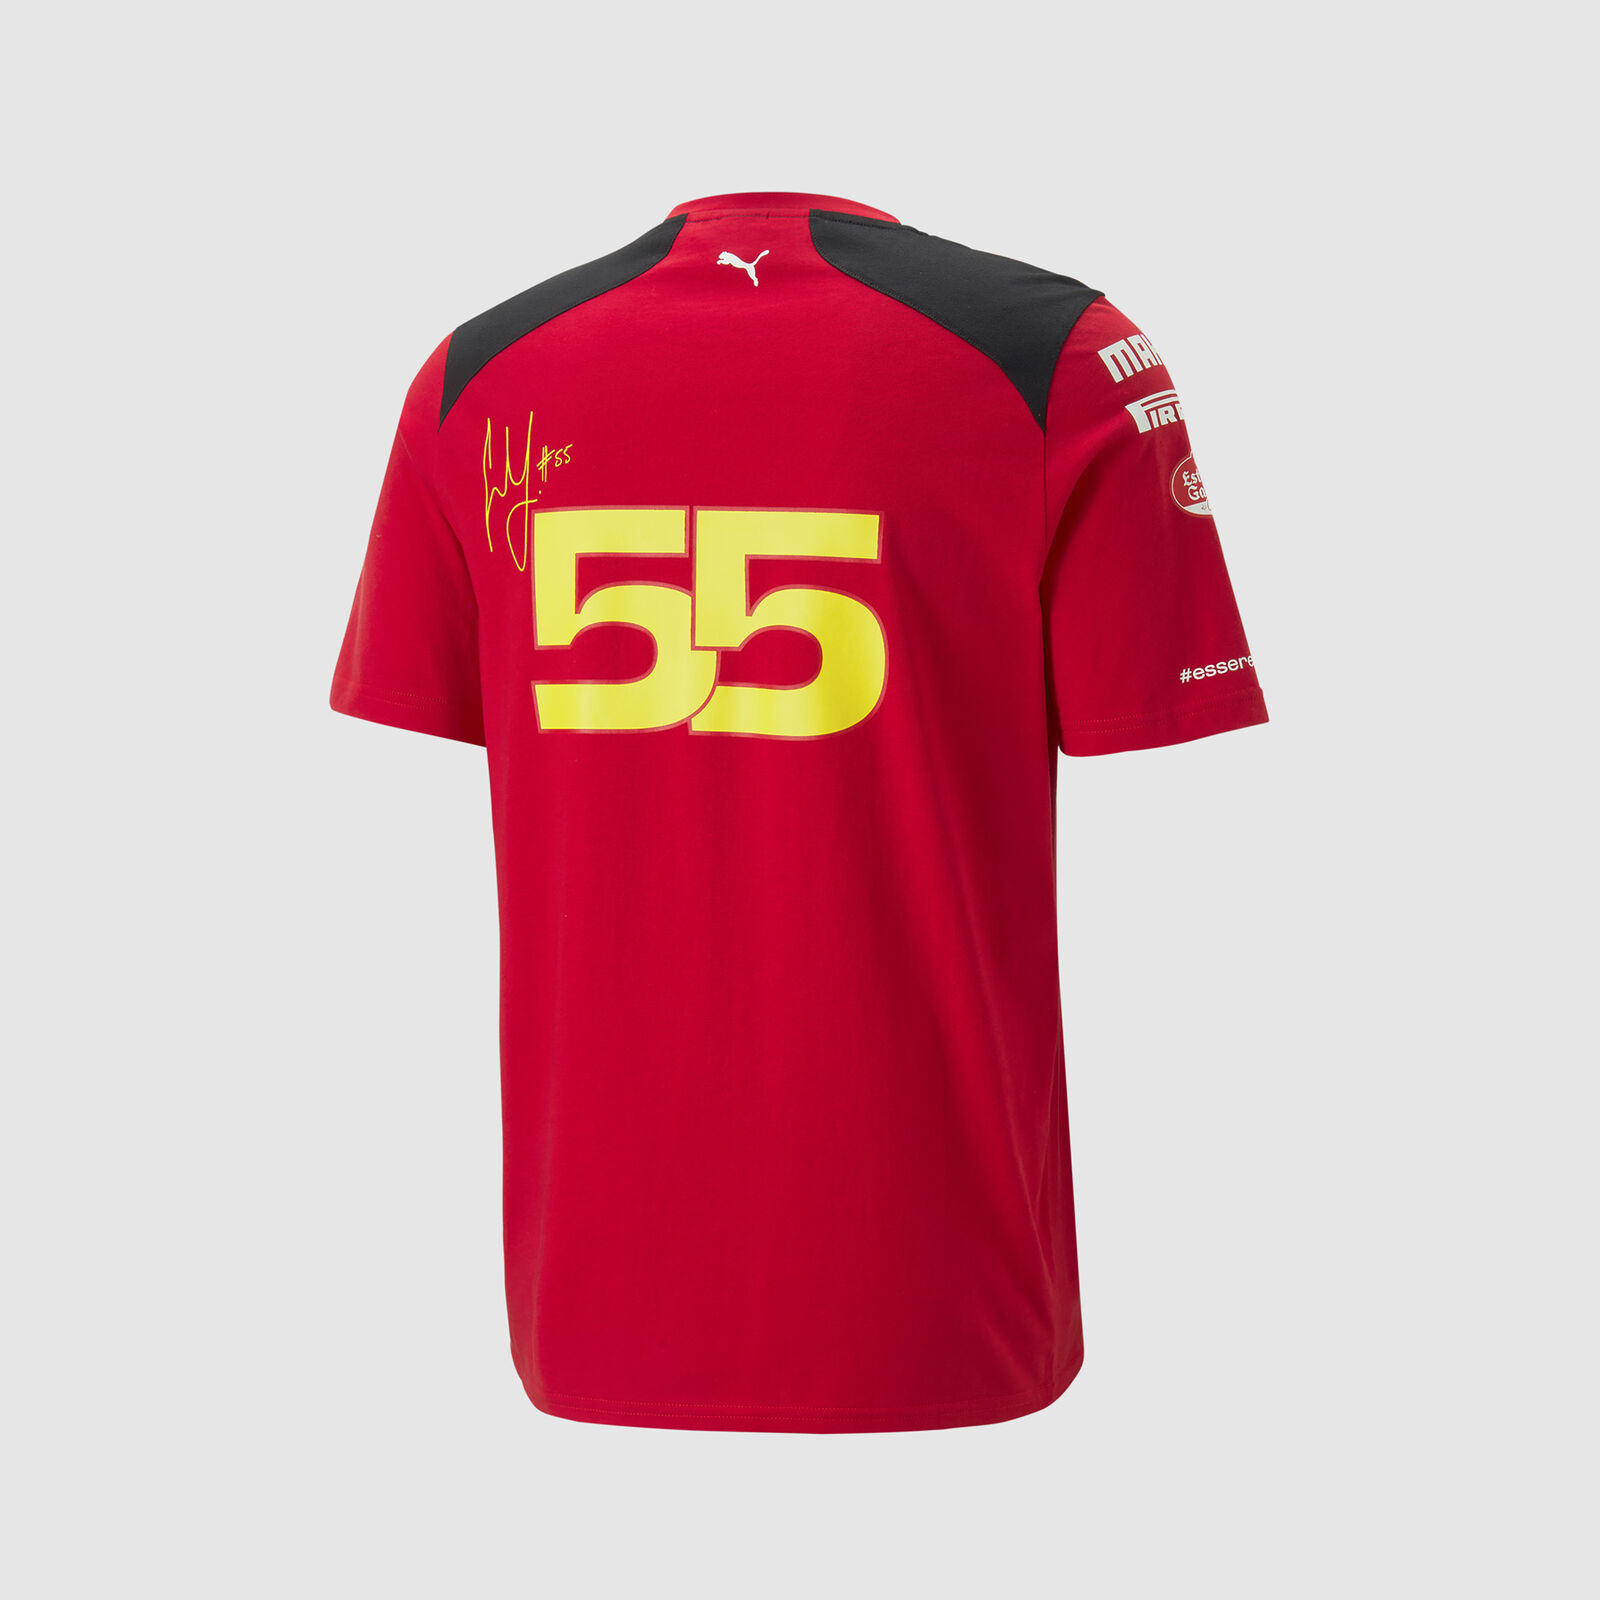 Camiseta Ferrari personalizable Original: Compra Online en Oferta